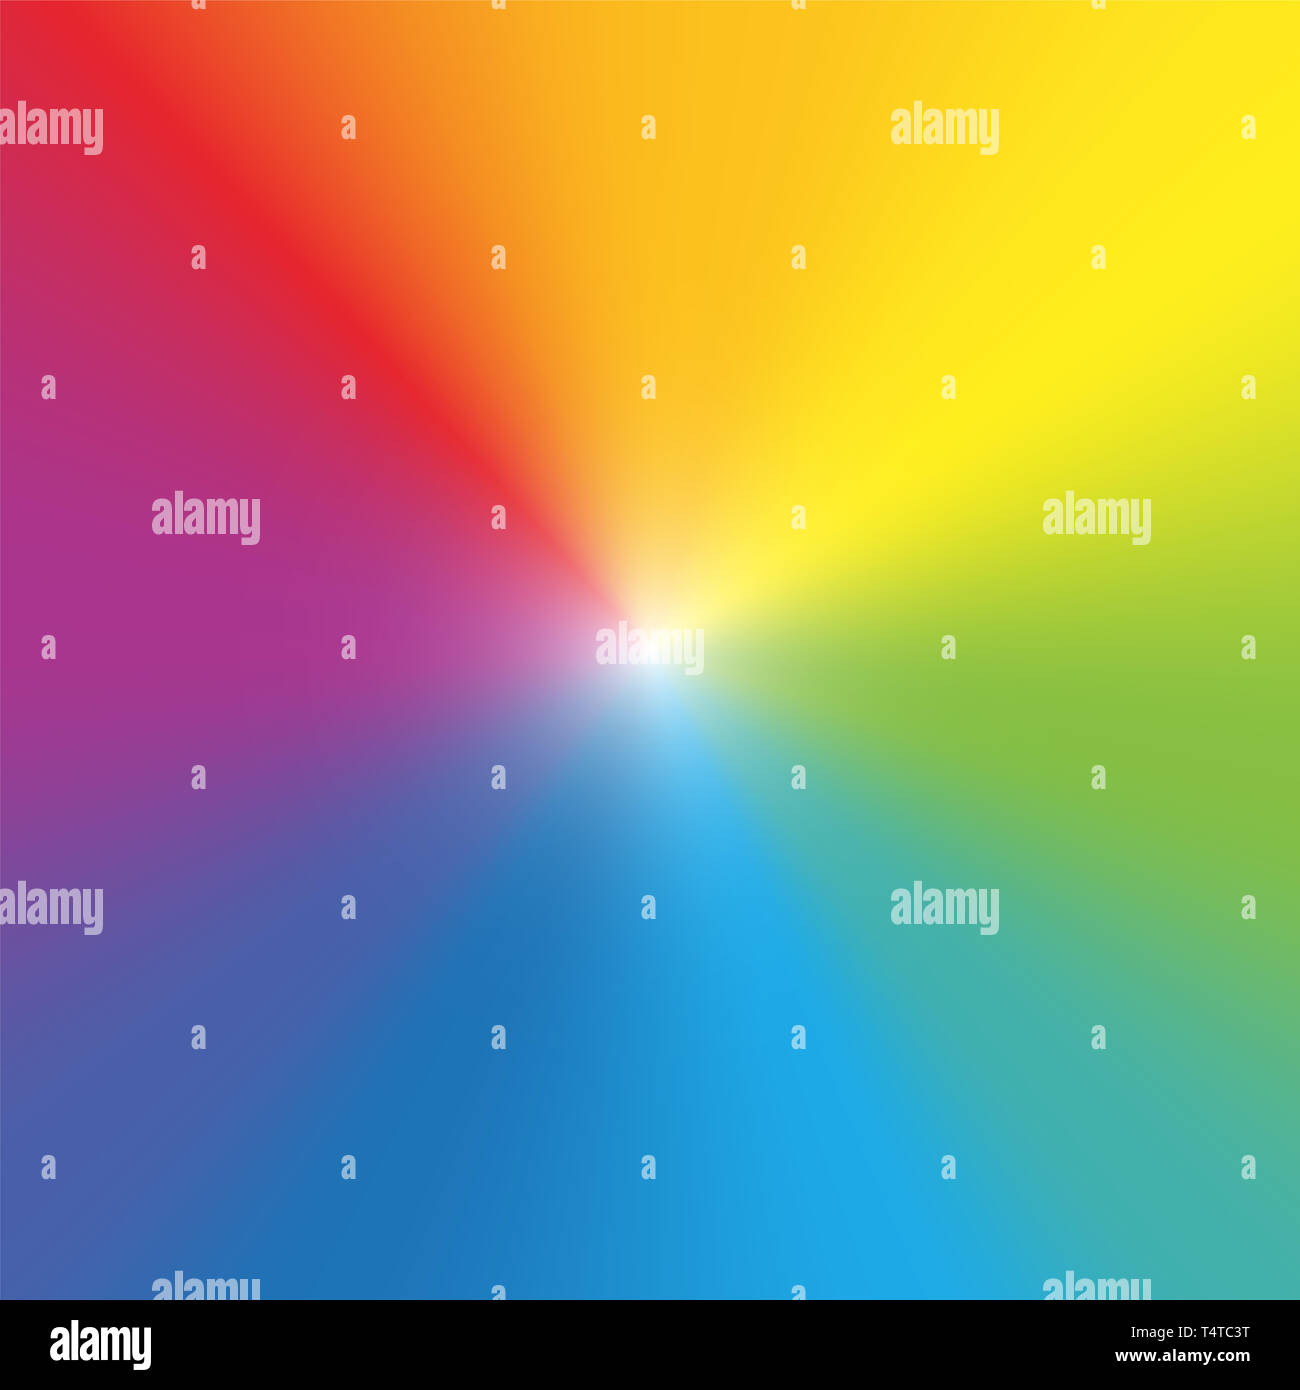 Fondo de pantalla de los colores del arco iris. Degradado de color espectral de rayos con luz central. Foto de stock